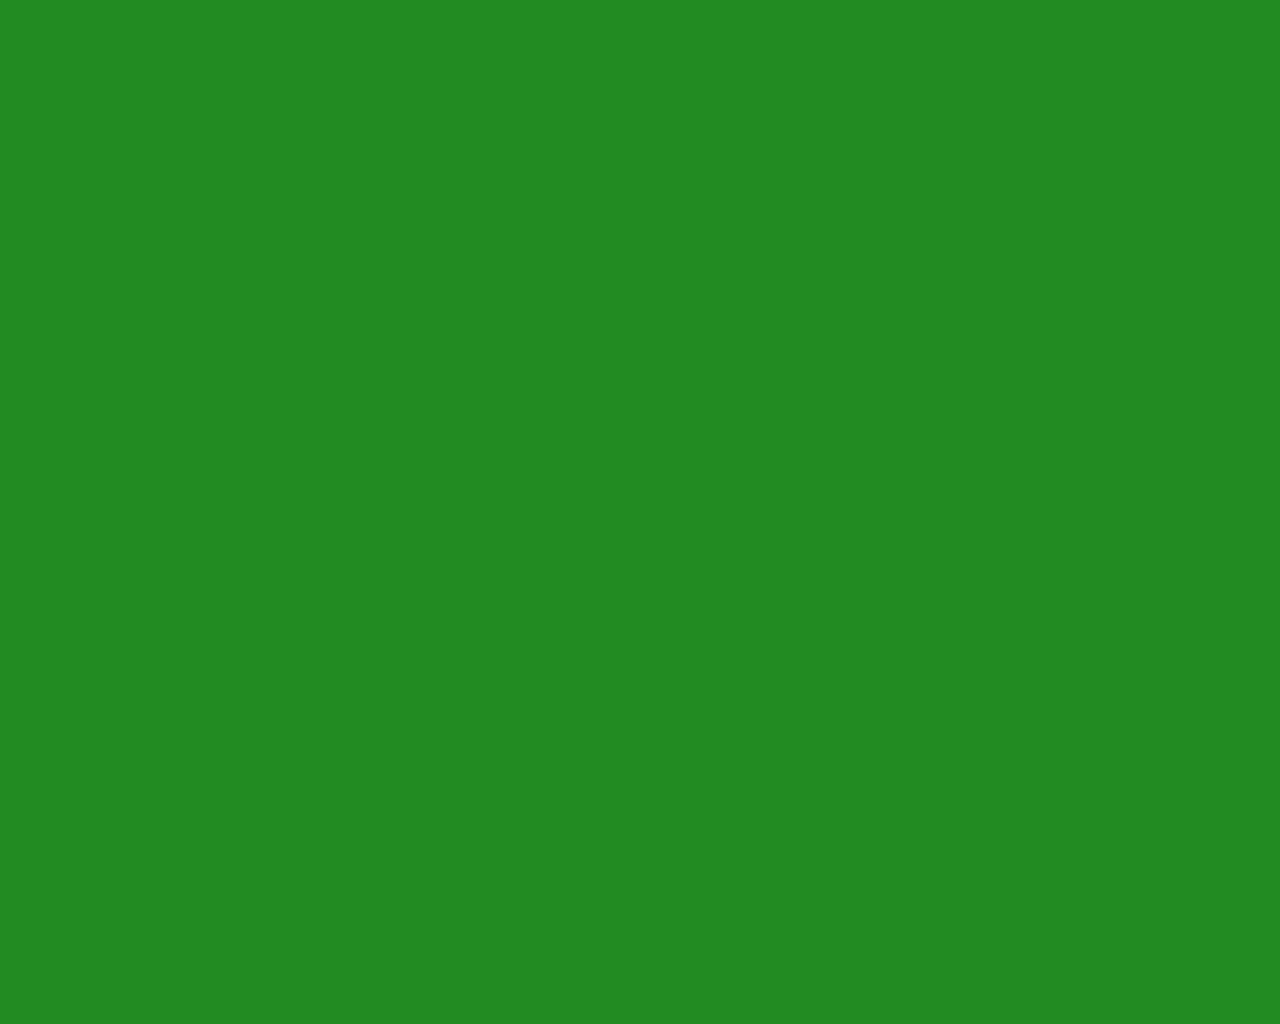 Green Color Background Wallpaper - WallpaperSafari